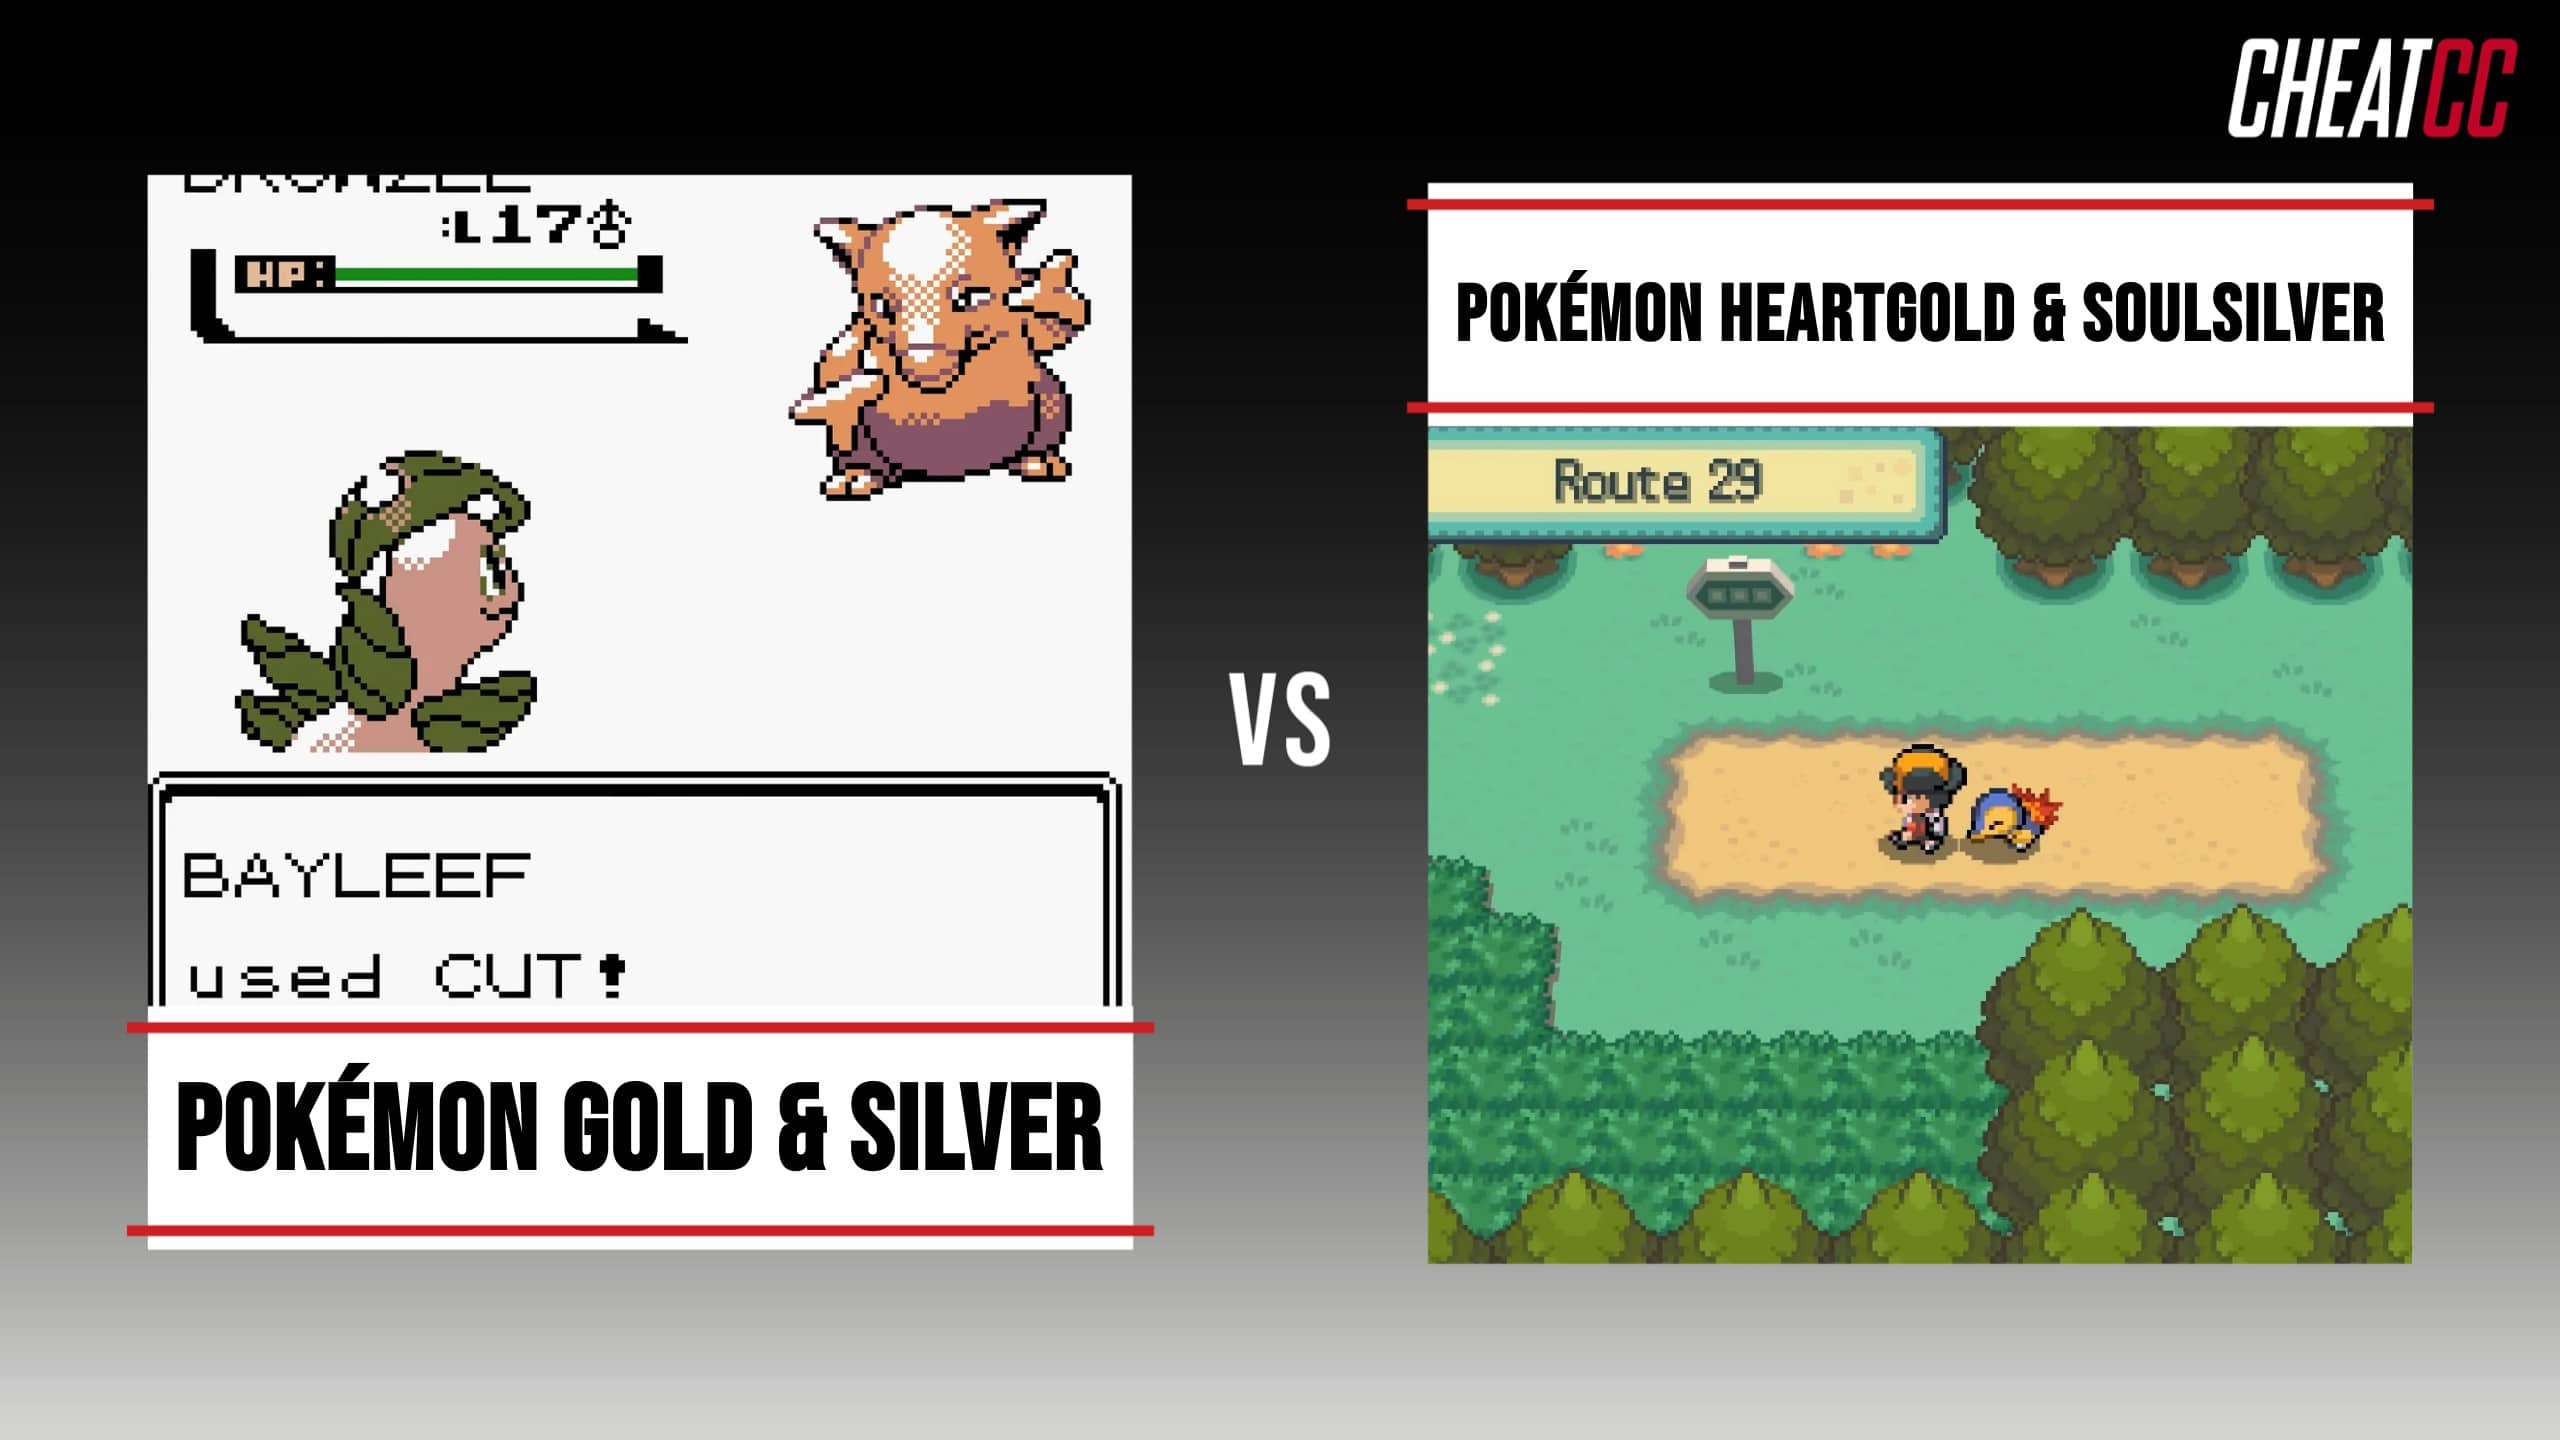 Pokémon Heart Gold & Soul Silver - Your Partner Pokémon